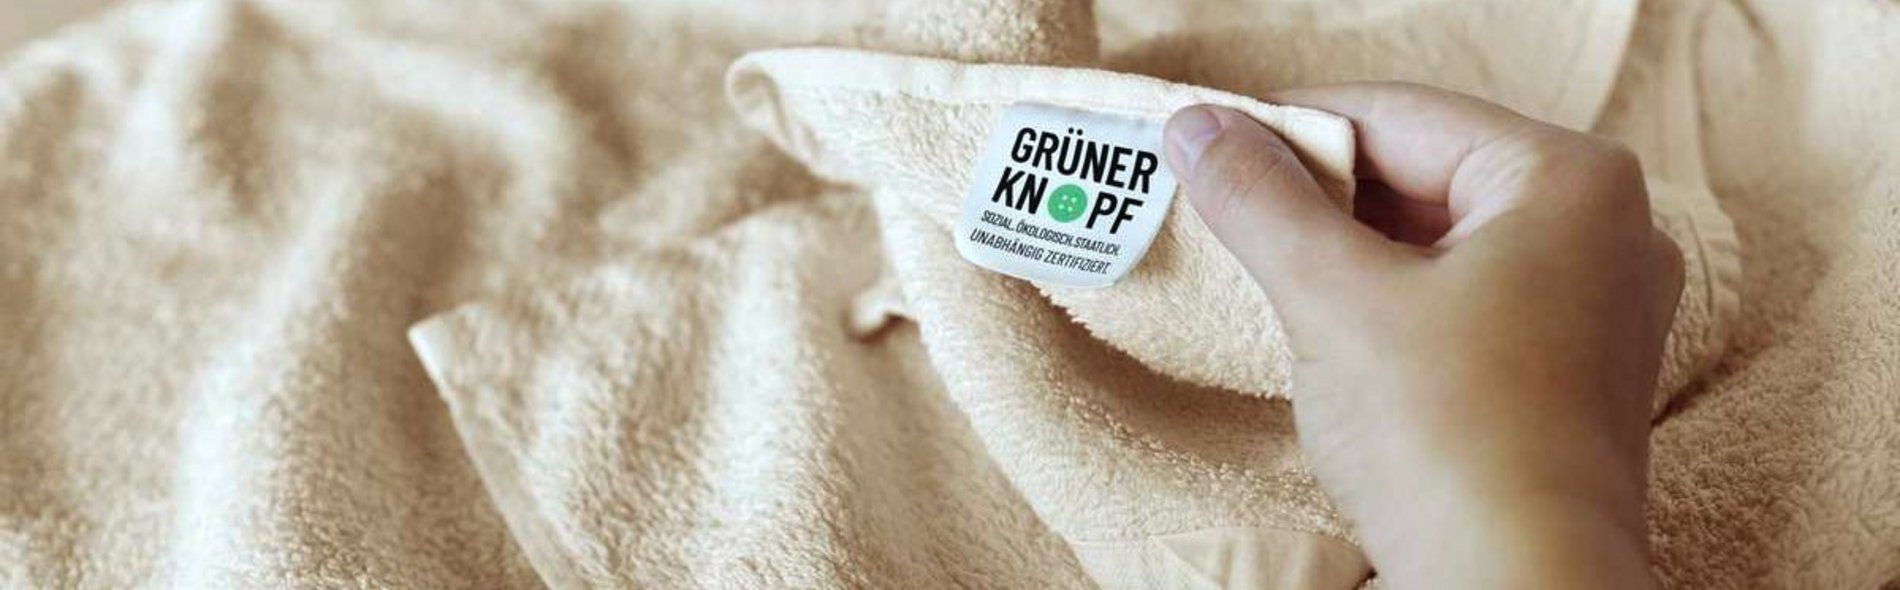 Eine Person zeigt an einem Handtuch das Etikett des Zertifikats "Grüner Knopf".